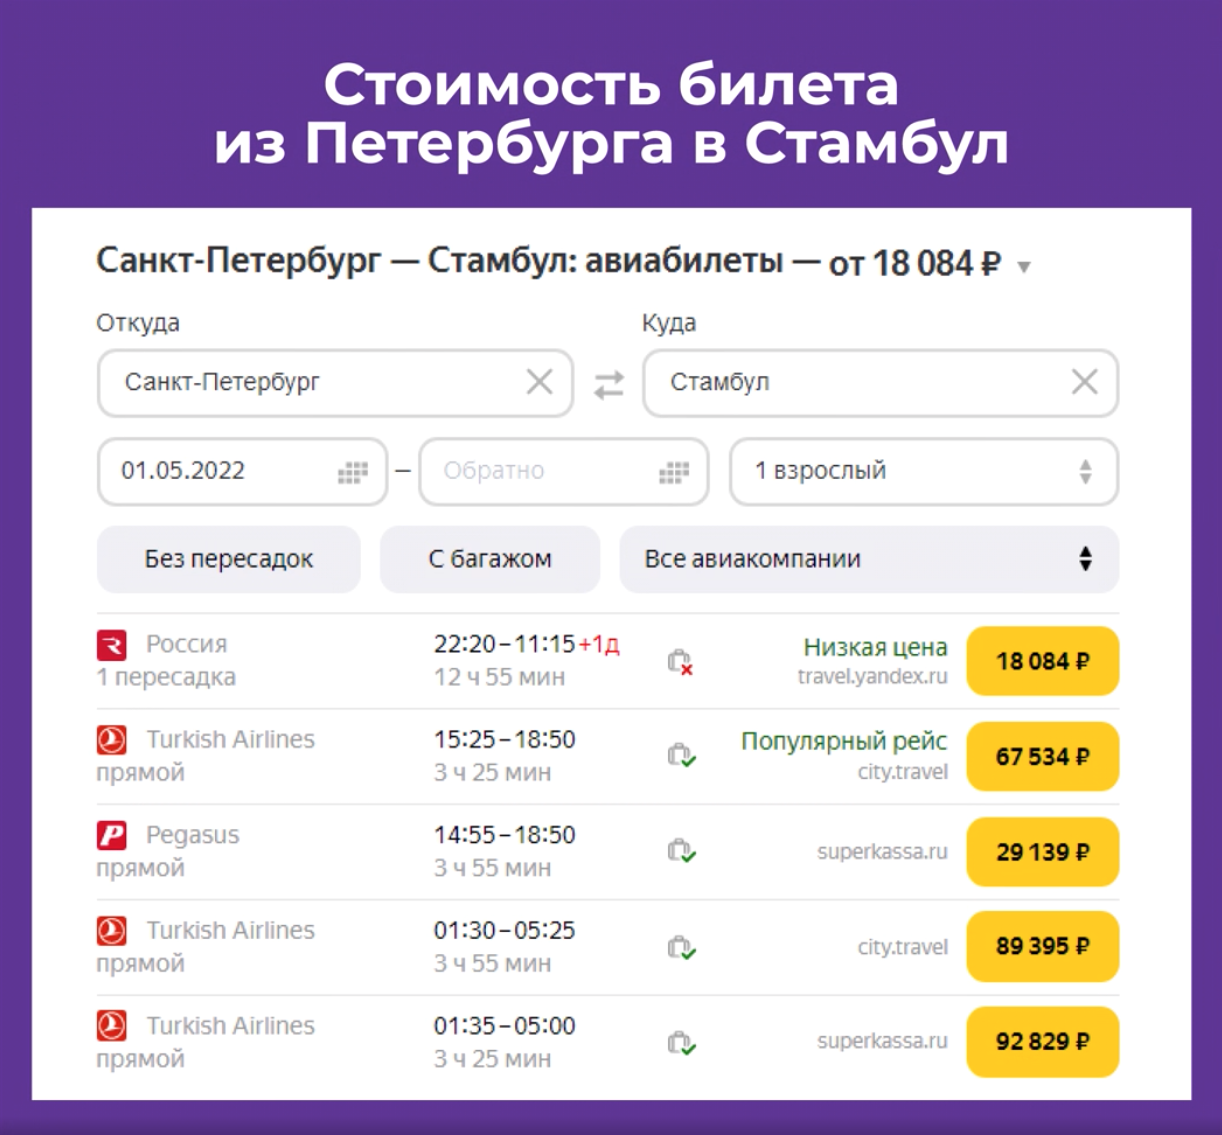 Стоимость билета из Петербурга в Стамбул